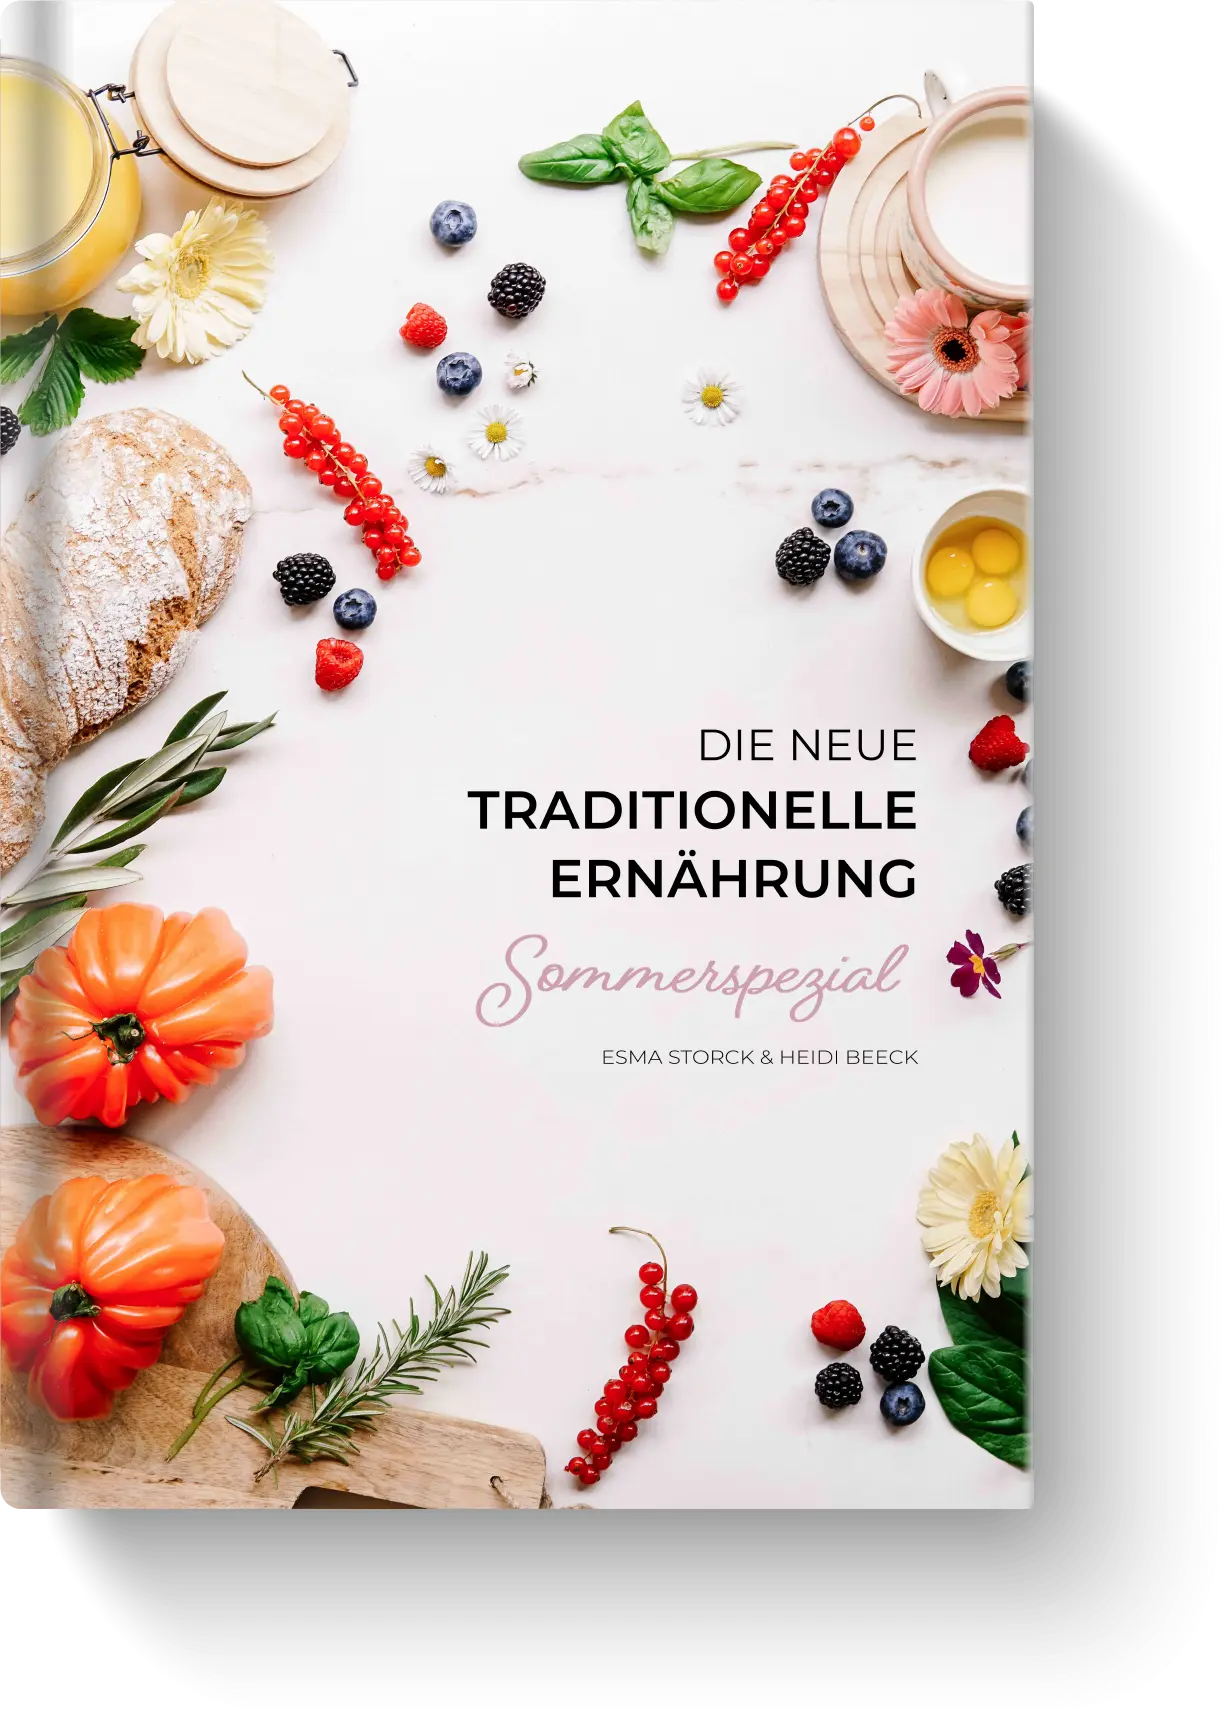 Die neue traditionelle Ernährung - Sommerspezial Kochbuch